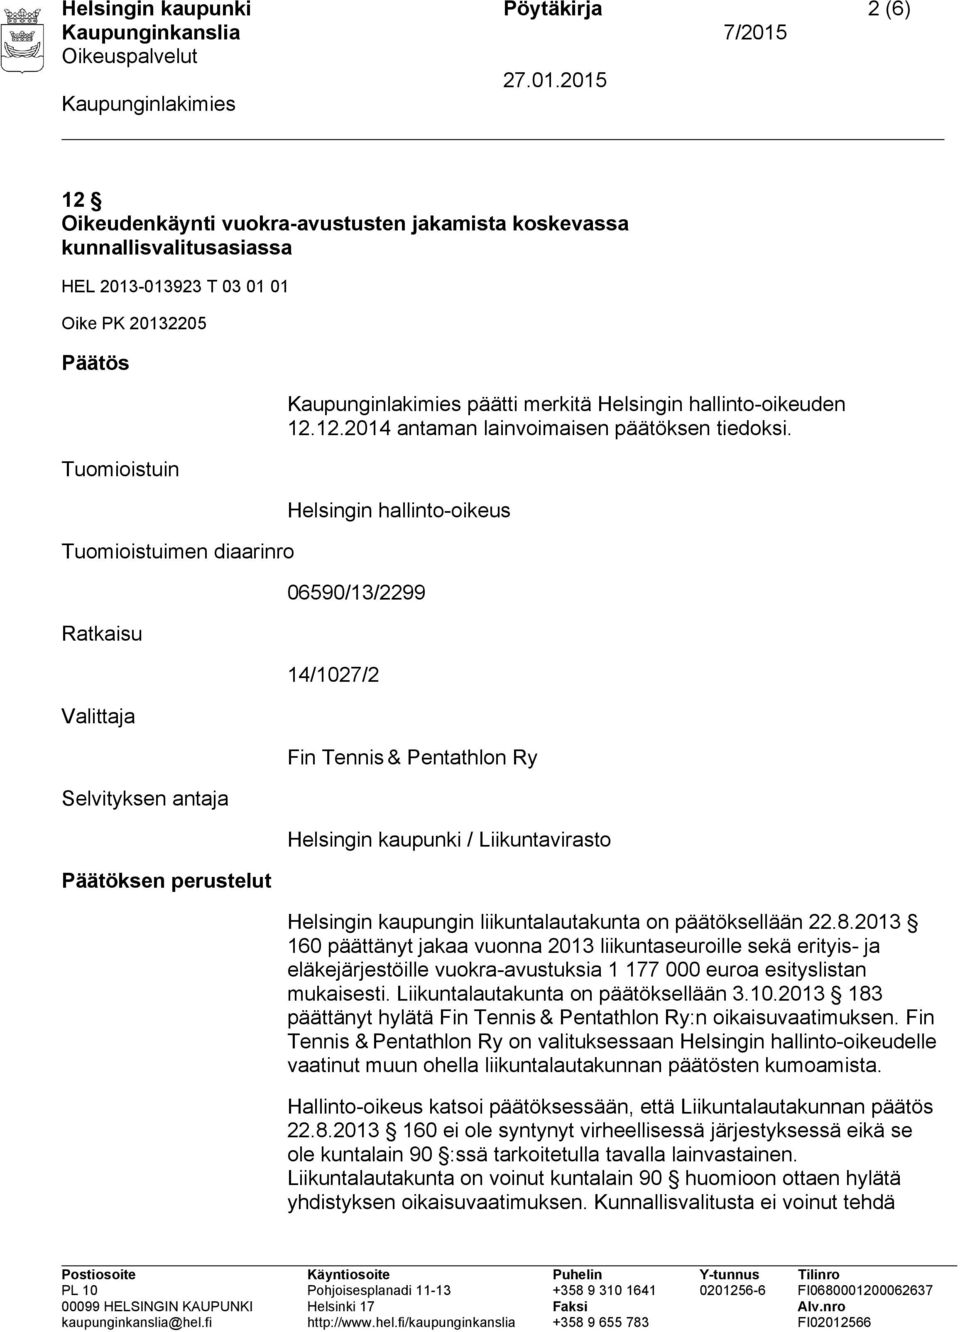 Helsingin hallinto-oikeus 06590/13/2299 14/1027/2 Fin Tennis & Pentathlon Ry Helsingin kaupunki / Liikuntavirasto Helsingin kaupungin liikuntalautakunta on päätöksellään 22.8.